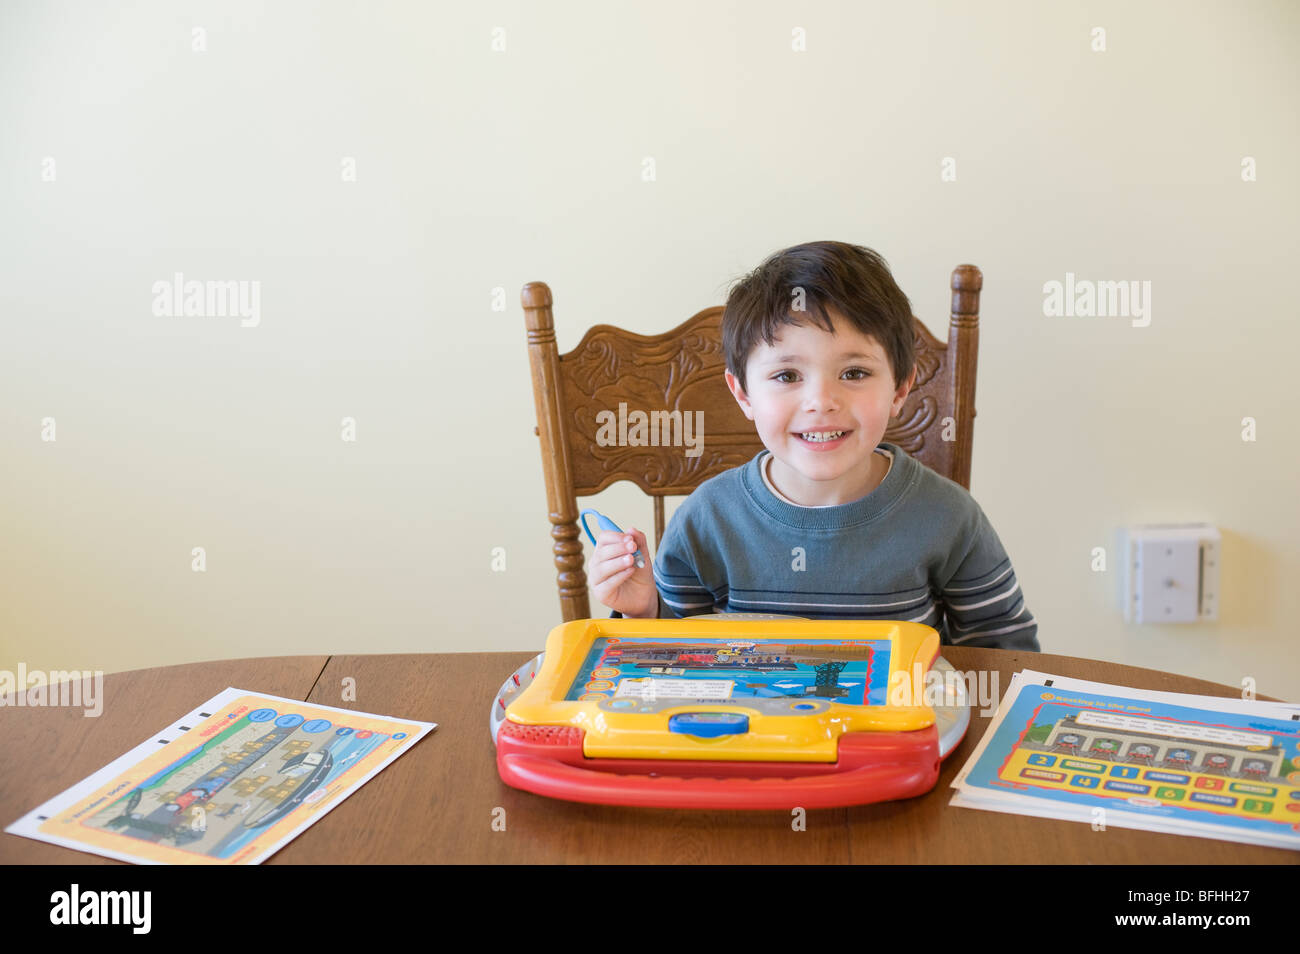 Vier Jahr spielt alte Hispanic Boy mit einer "Vtec" Marke Thomas und Freunde interaktiven elektronischen Spielzeug. Bild ist Modell veröffentlicht. Stockfoto